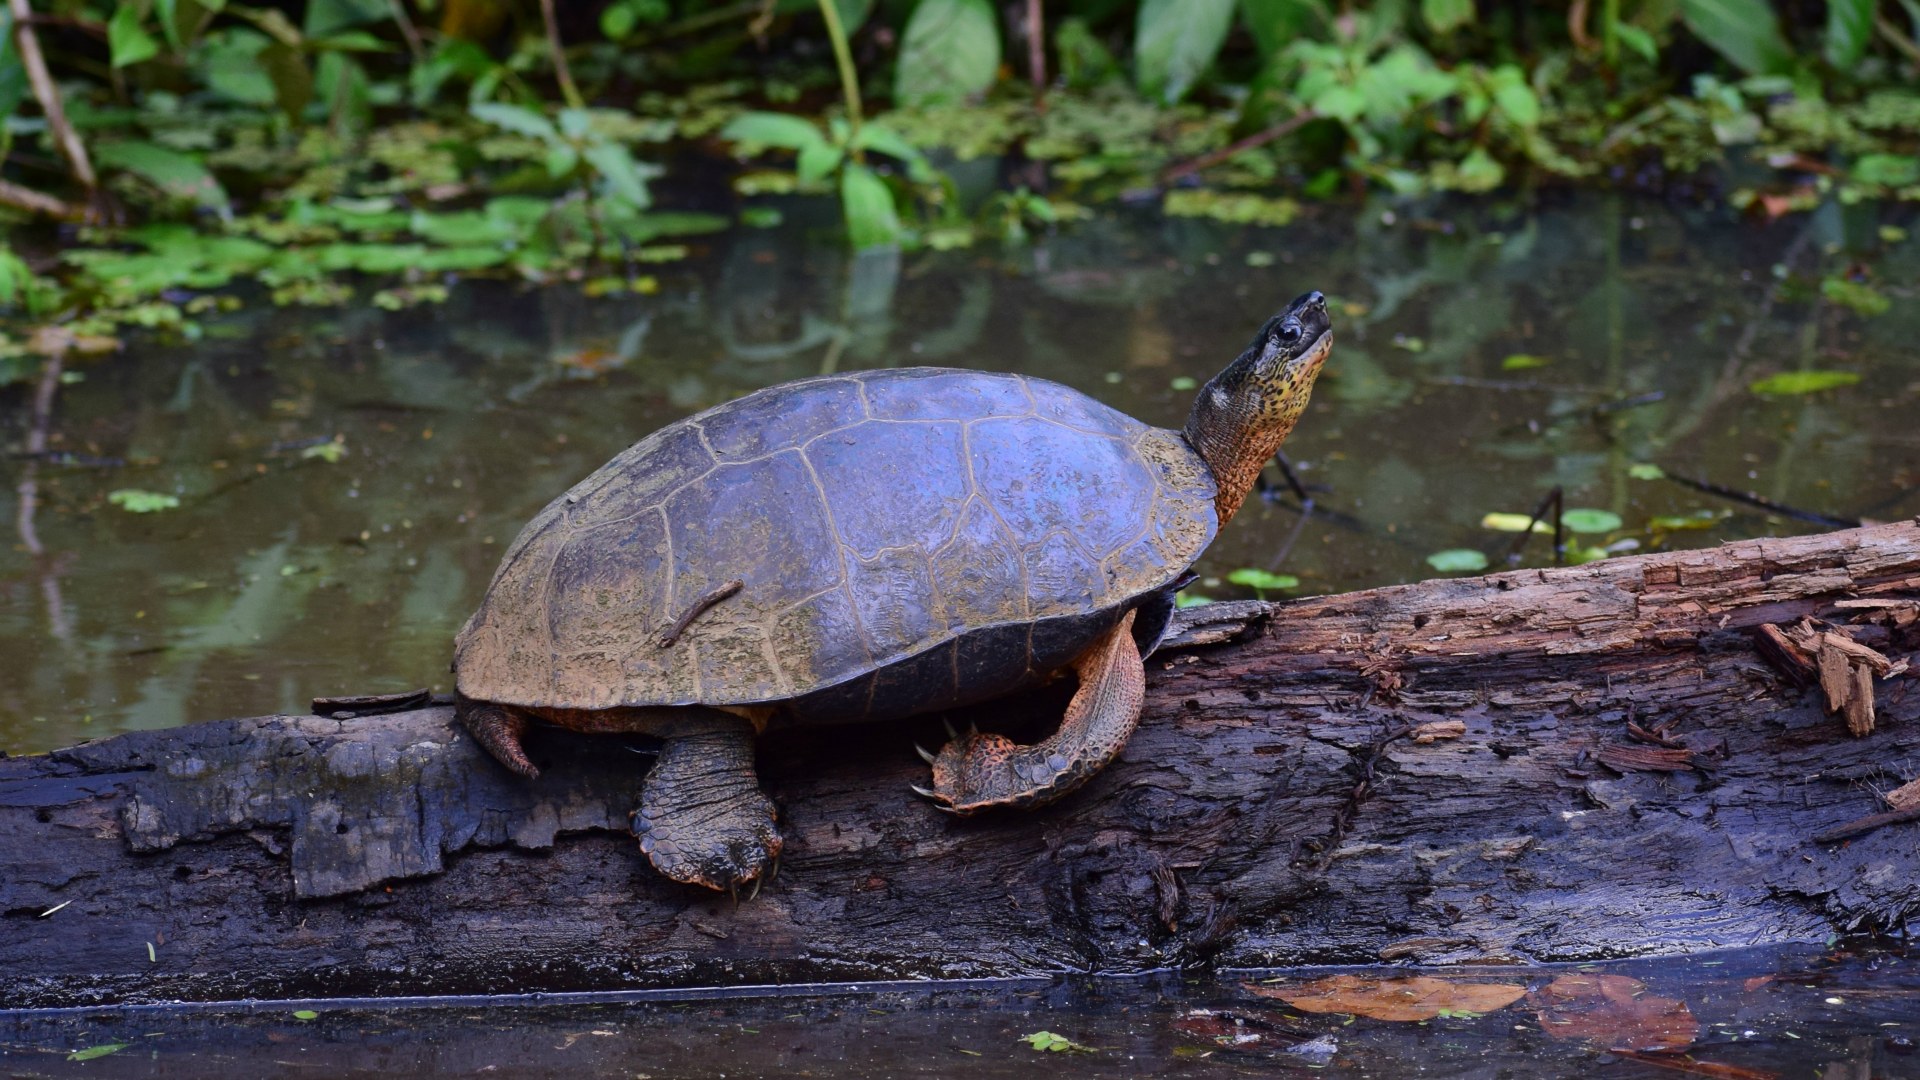 Black River Turtle, Tortuguero National Park